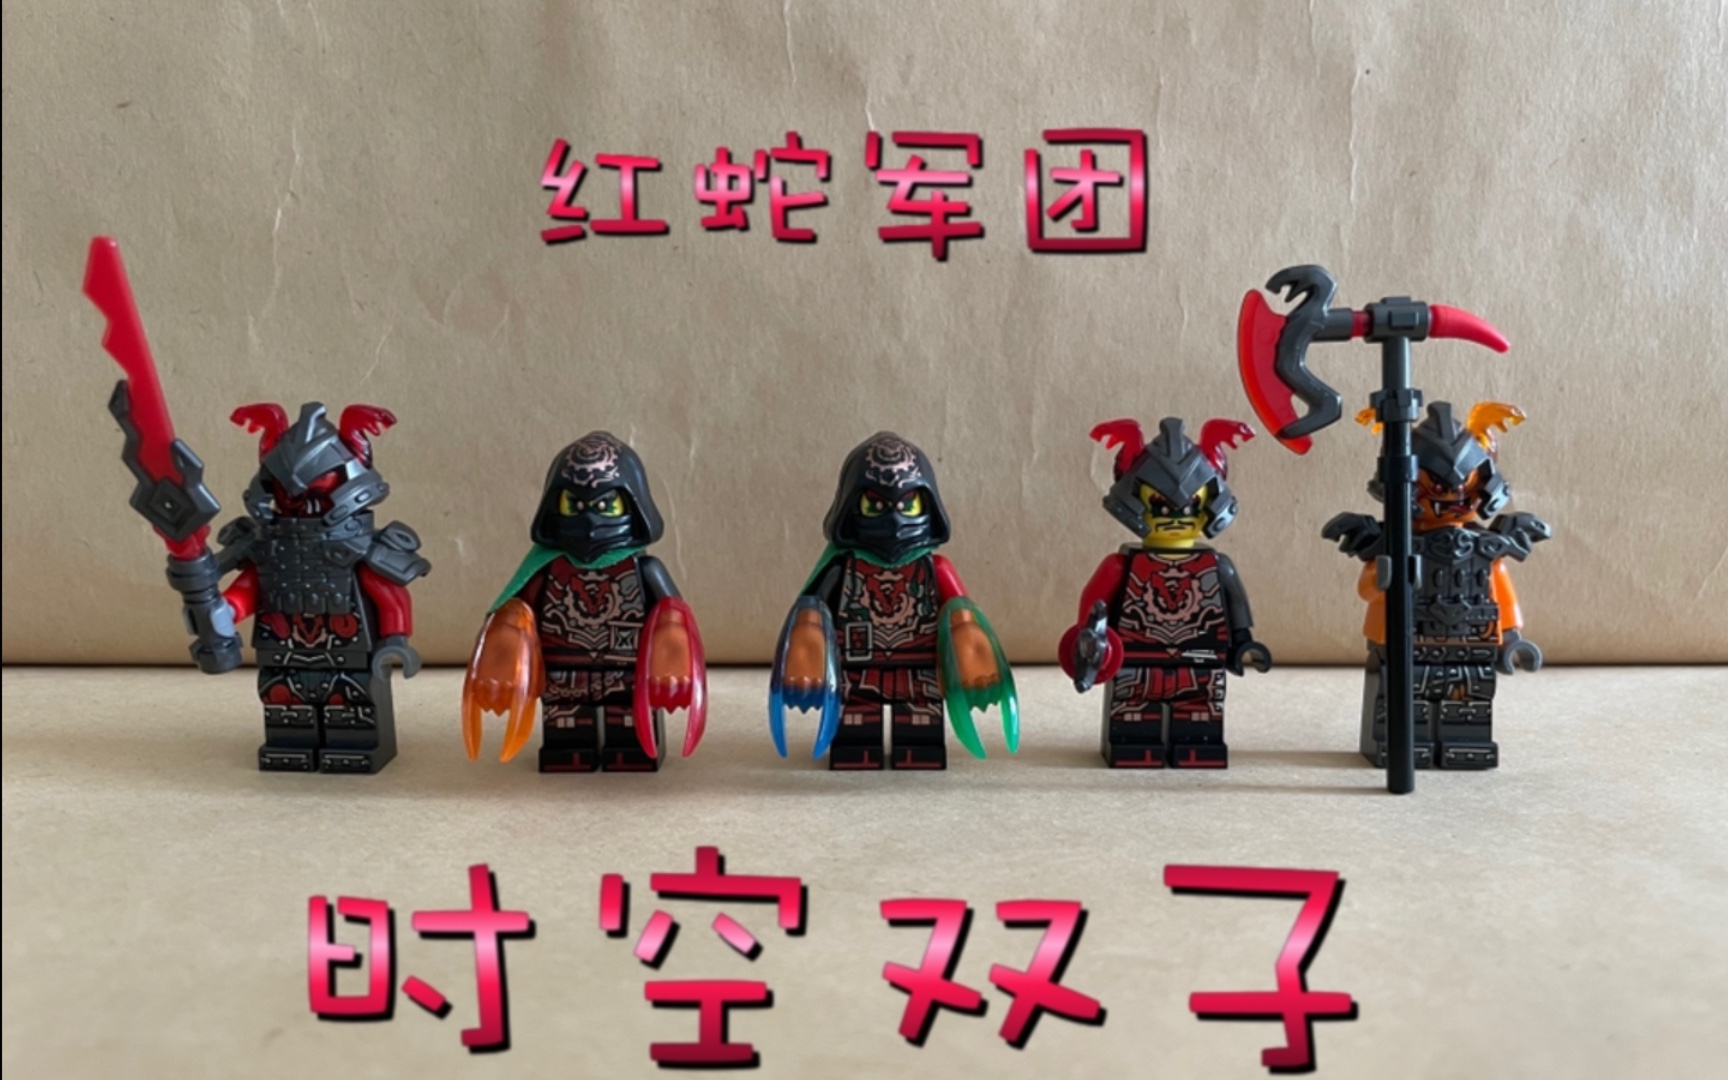 [Lego 乐高] “幻影忍者” “凯的火石机甲巨人” 71720 - 玩具 - 亚马逊中国